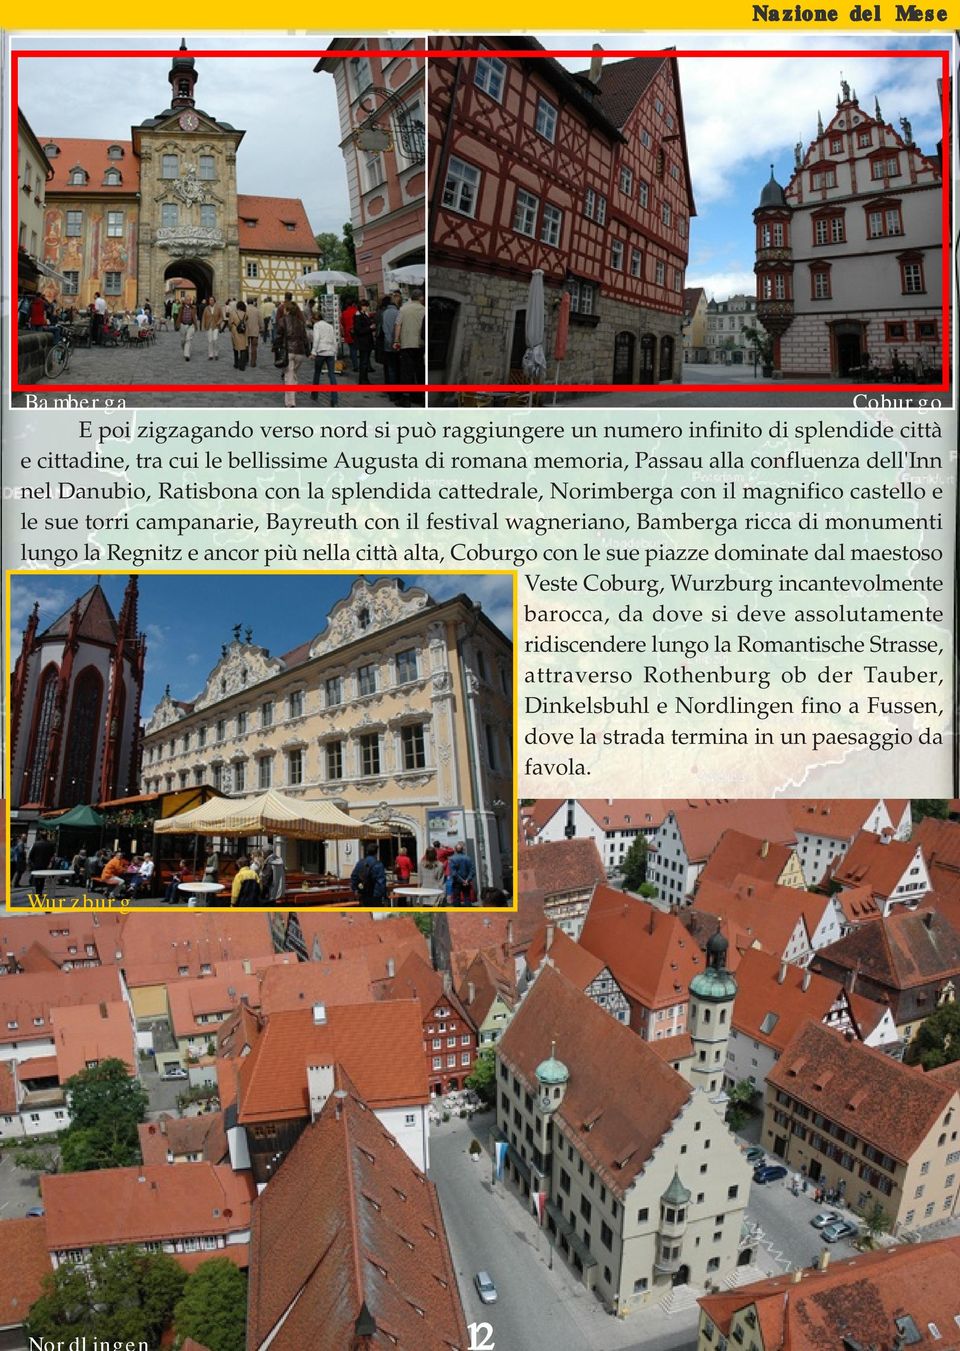 ricca di monumenti lungo la Regnitz e ancor più nella città alta, Coburgo con le sue piazze dominate dal maestoso Veste Coburg, Wurzburg incantevolmente barocca, da dove si deve